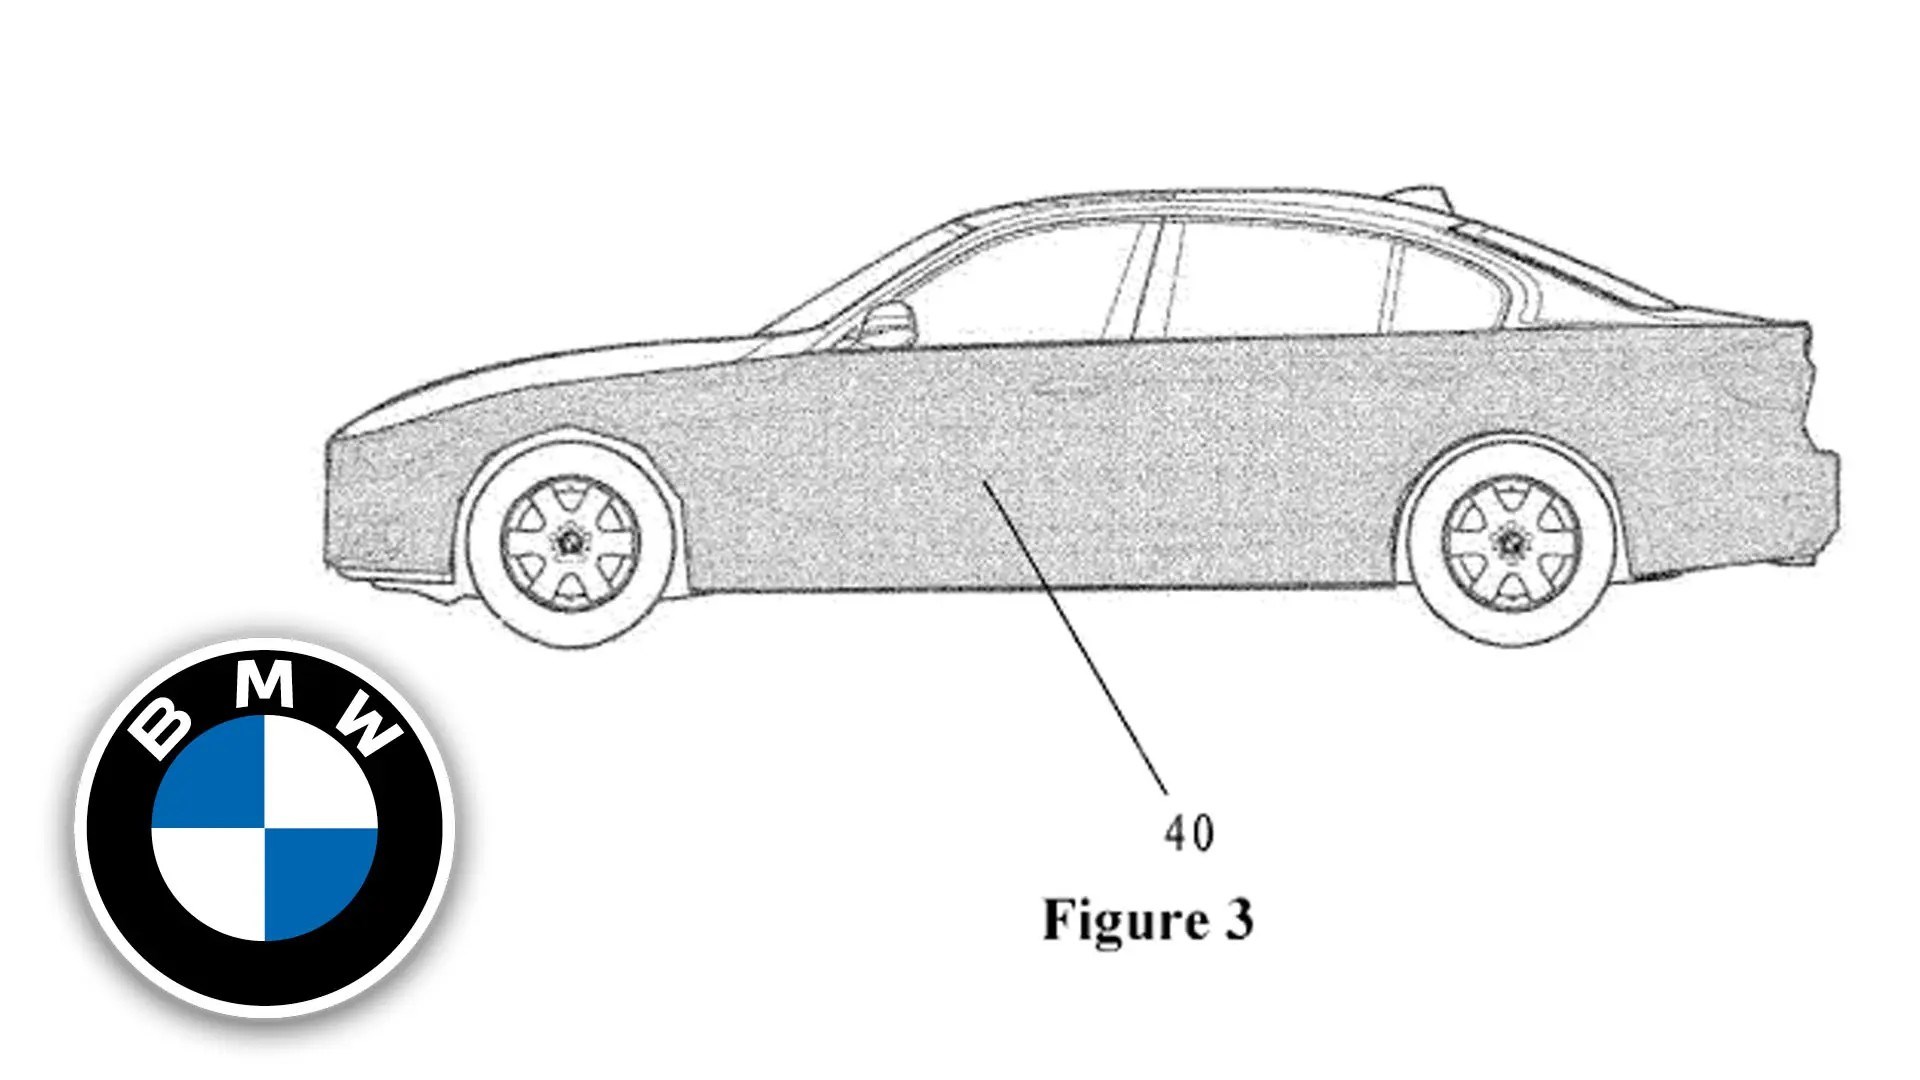 BMW çizik uyarı sistemi geliştirdi: Nasıl çalışacak?